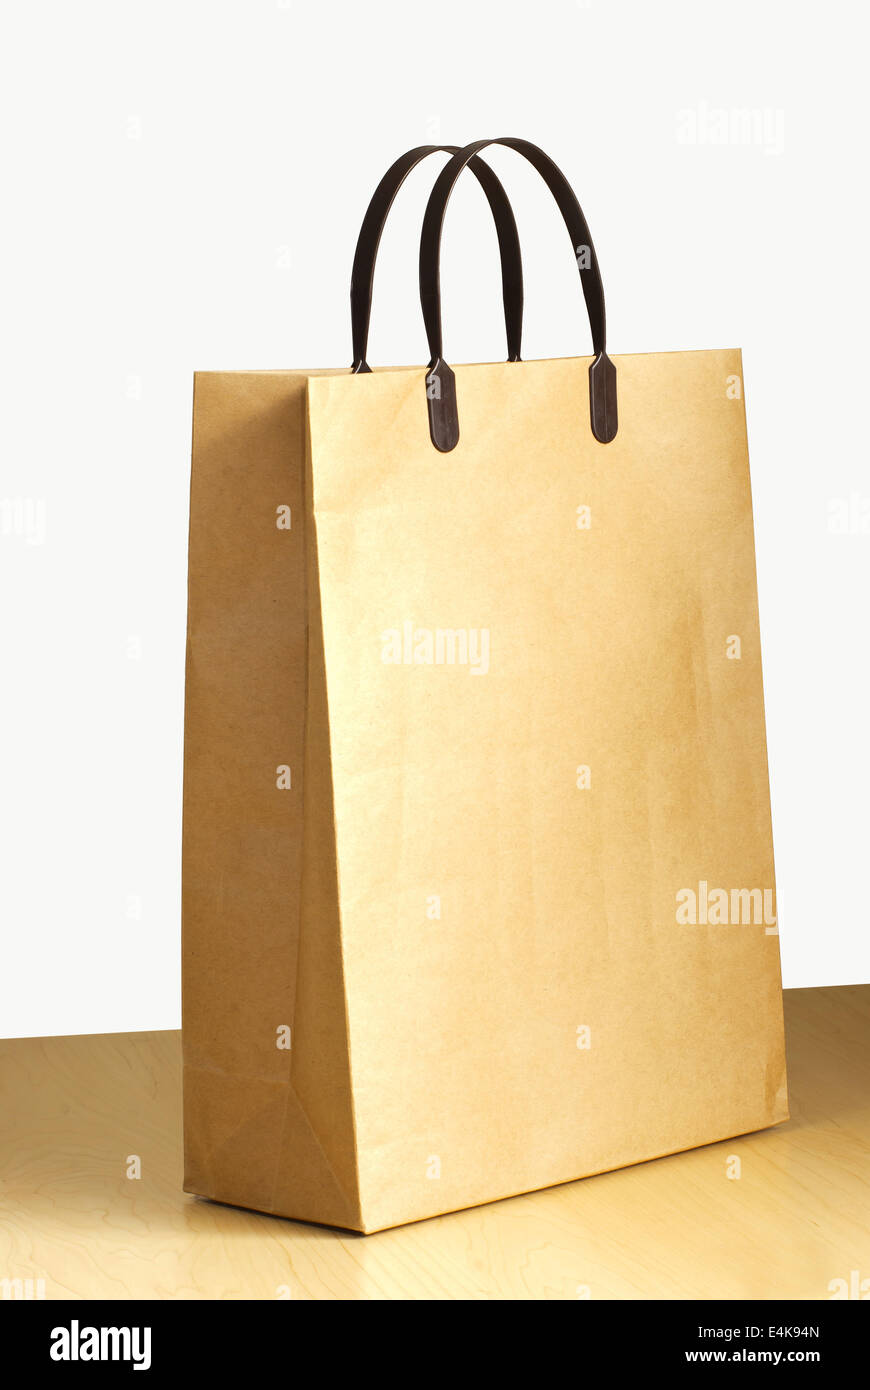 Paper bag on wooden floor Stock Photo - Alamy